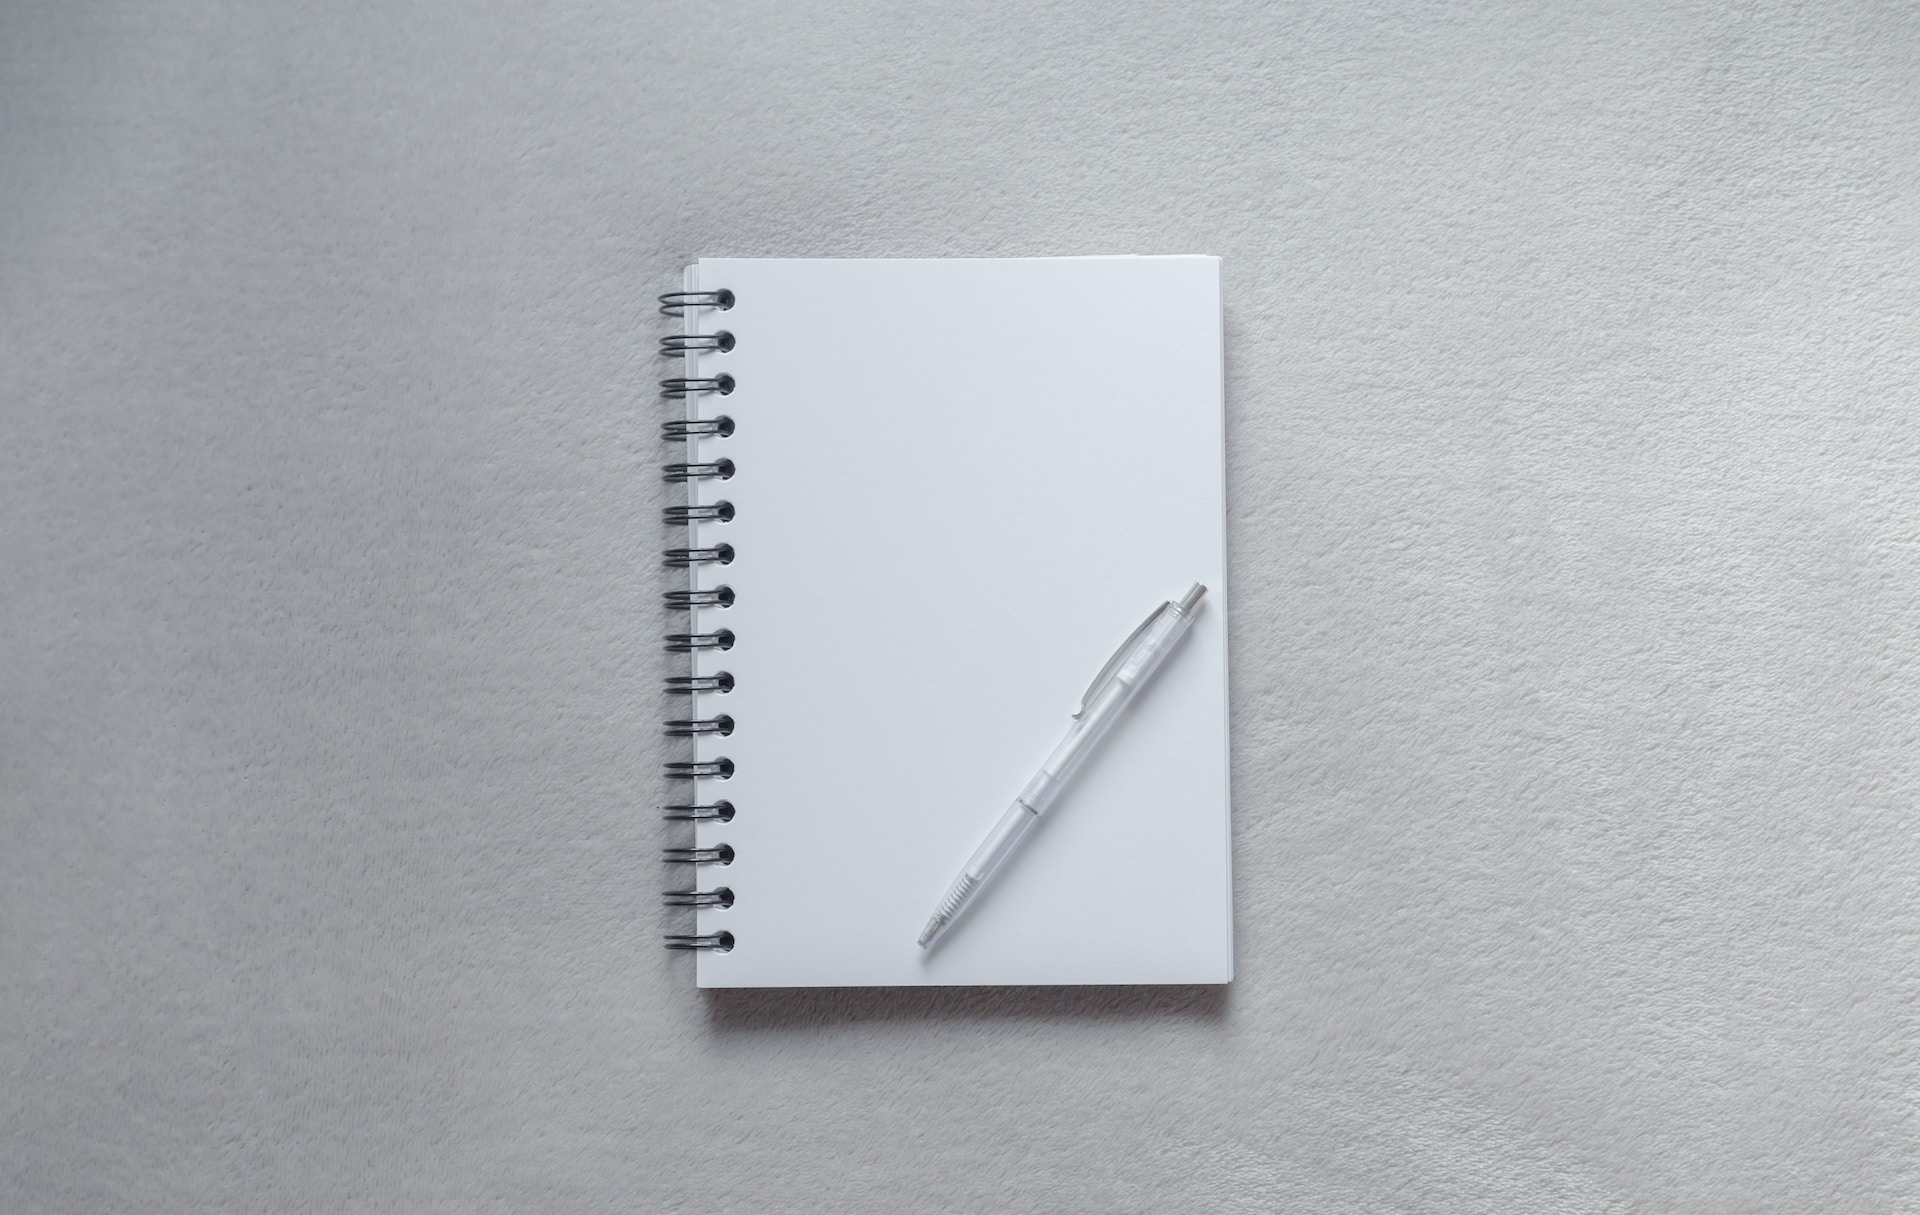 A pen atop a blank notepad